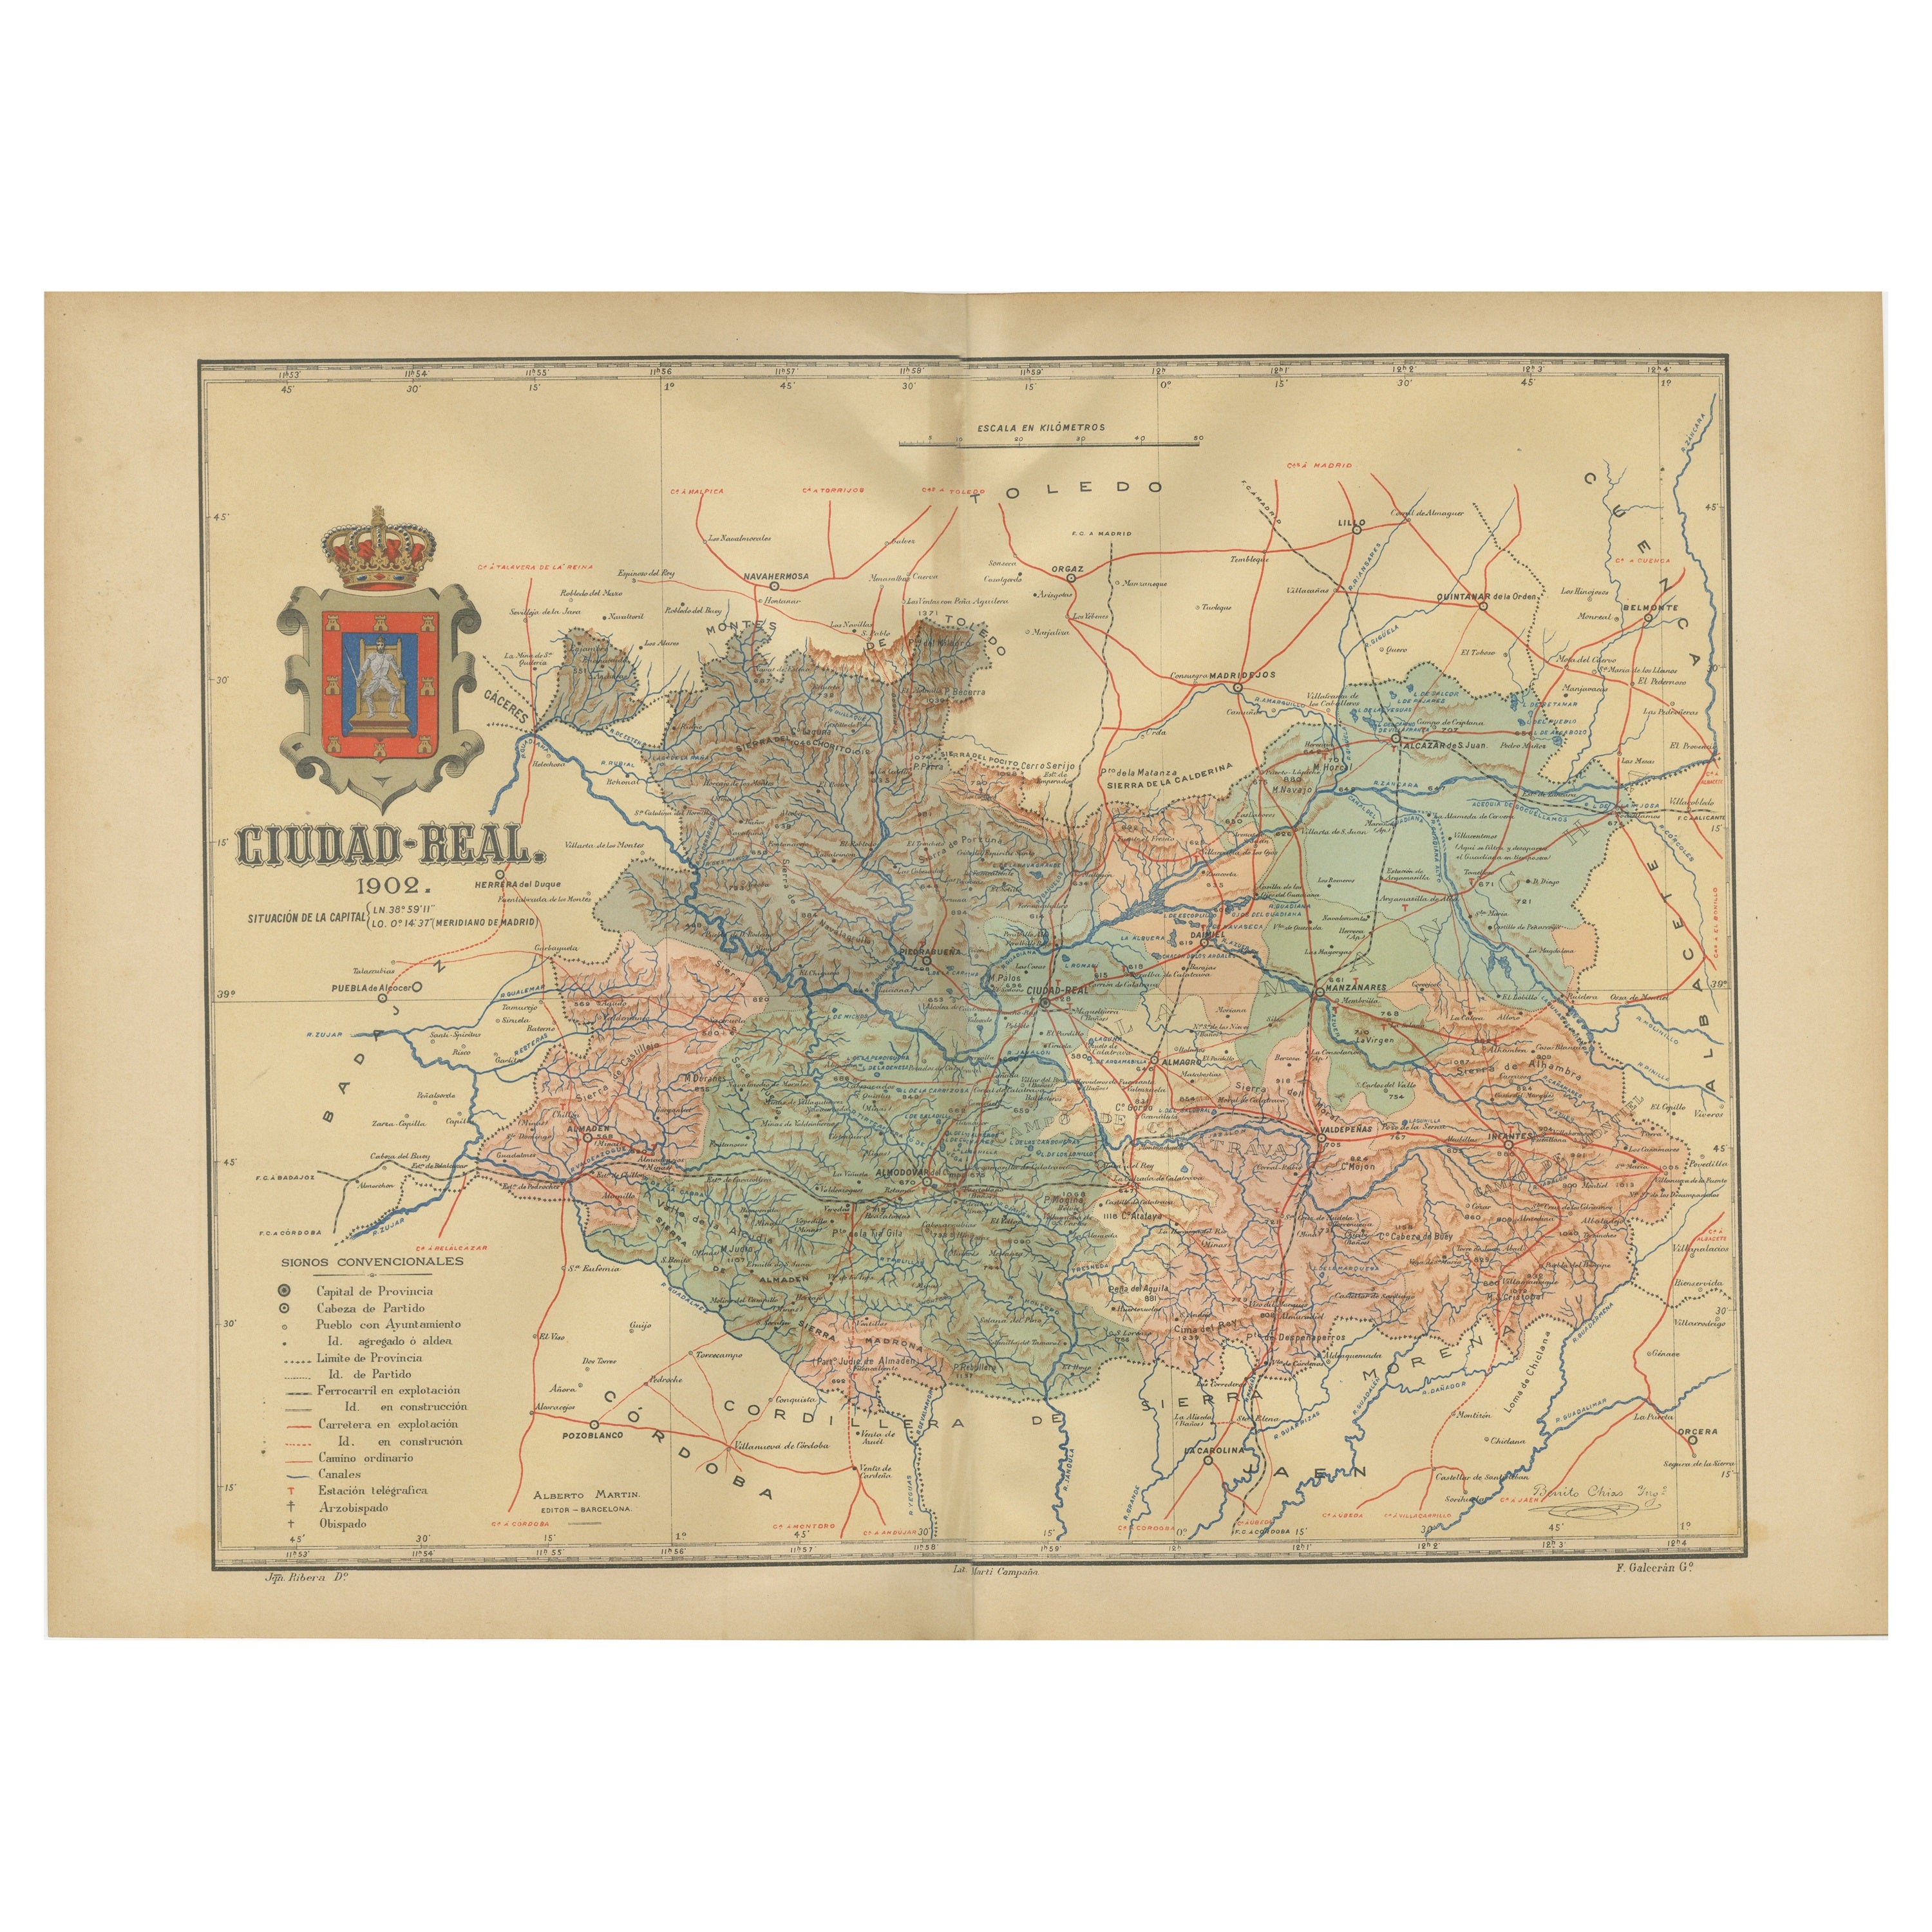 Ciudad Real 1902: Eine detaillierte Kartographische Untersuchung von La Mancha in Spanien